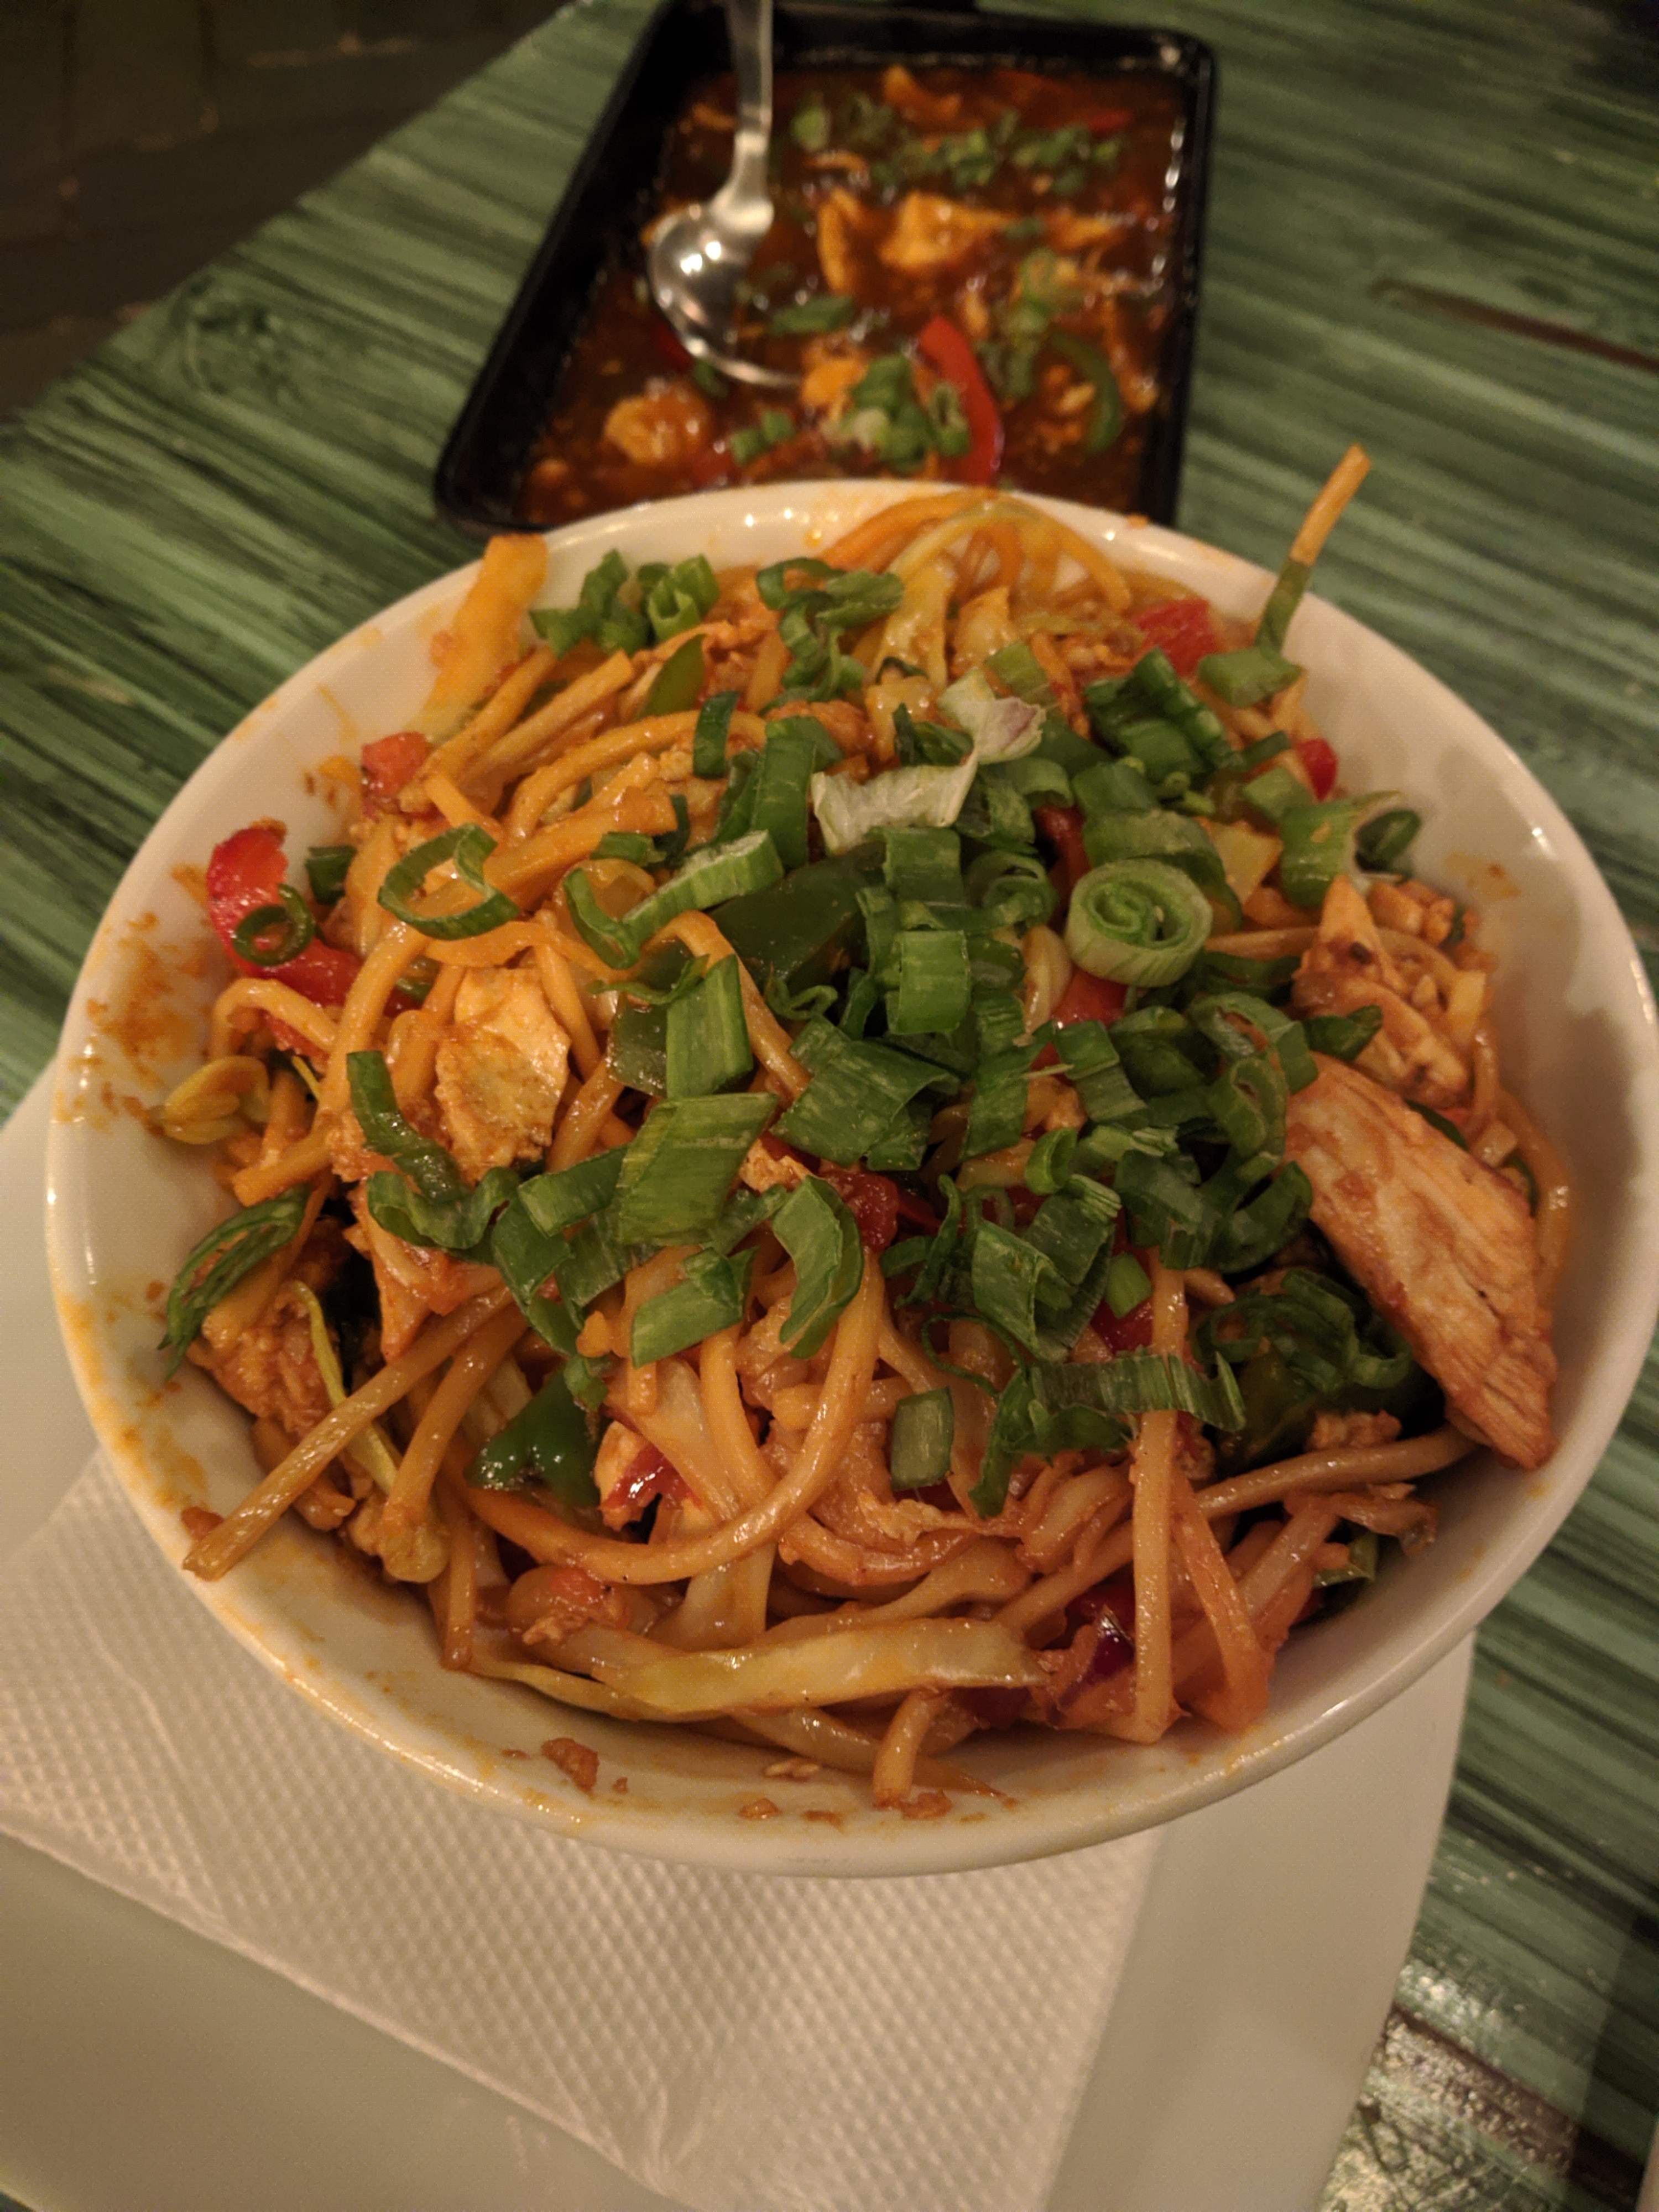 Dish,Food,Cuisine,Lo mein,Pad thai,Ingredient,Karedok,Cao lầu,Hot dry noodles,Fried noodles